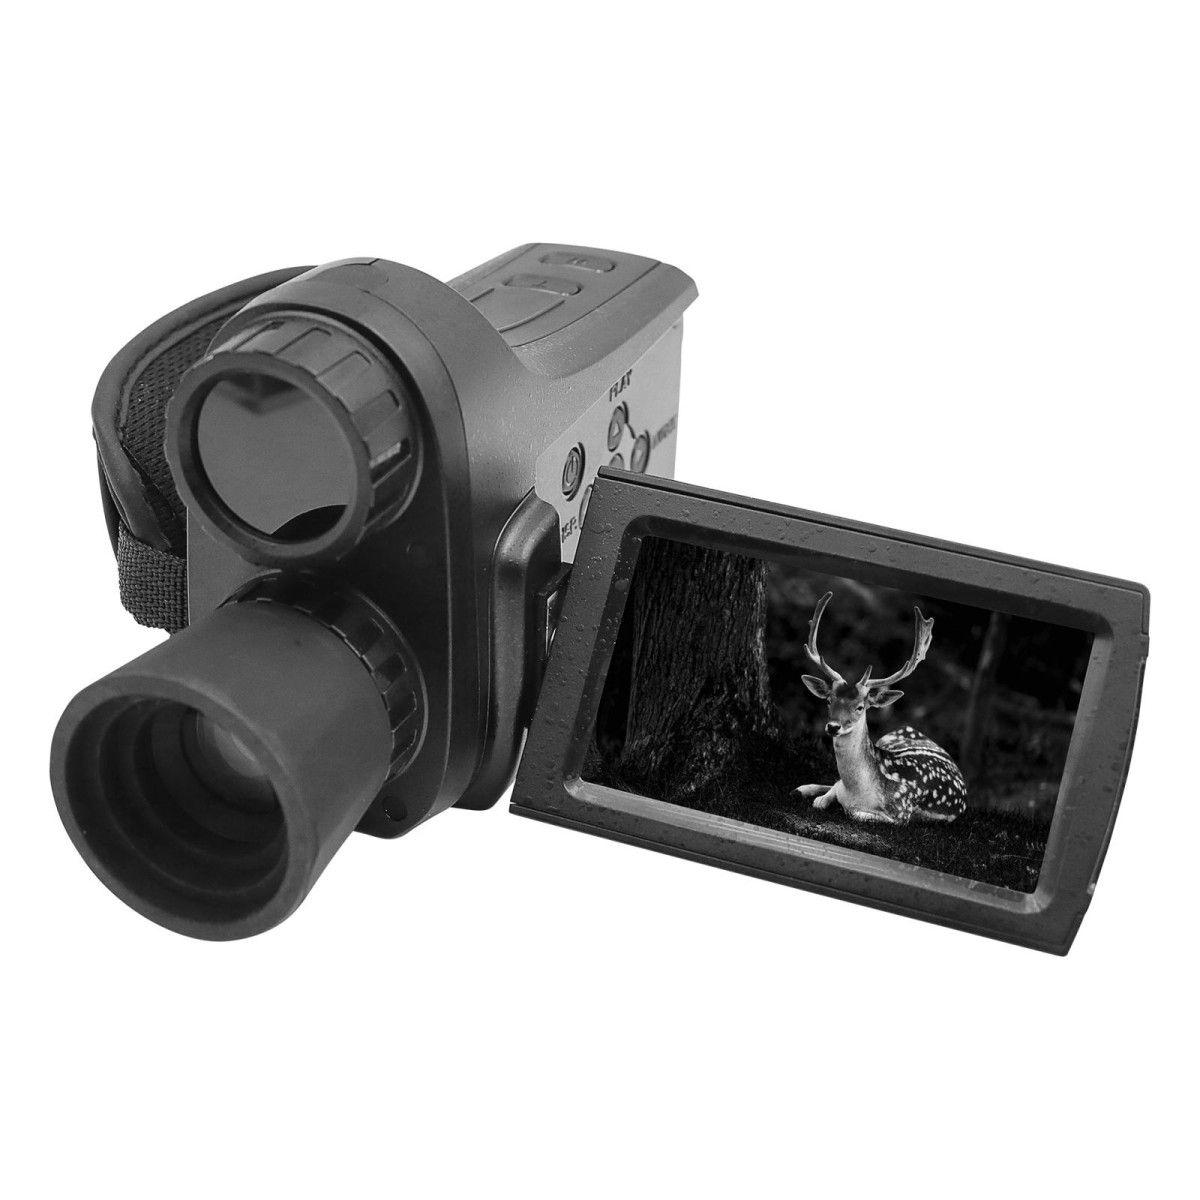 NV2186 Handle HD Digital Reconnament Hunting Safety Monitoring Camera